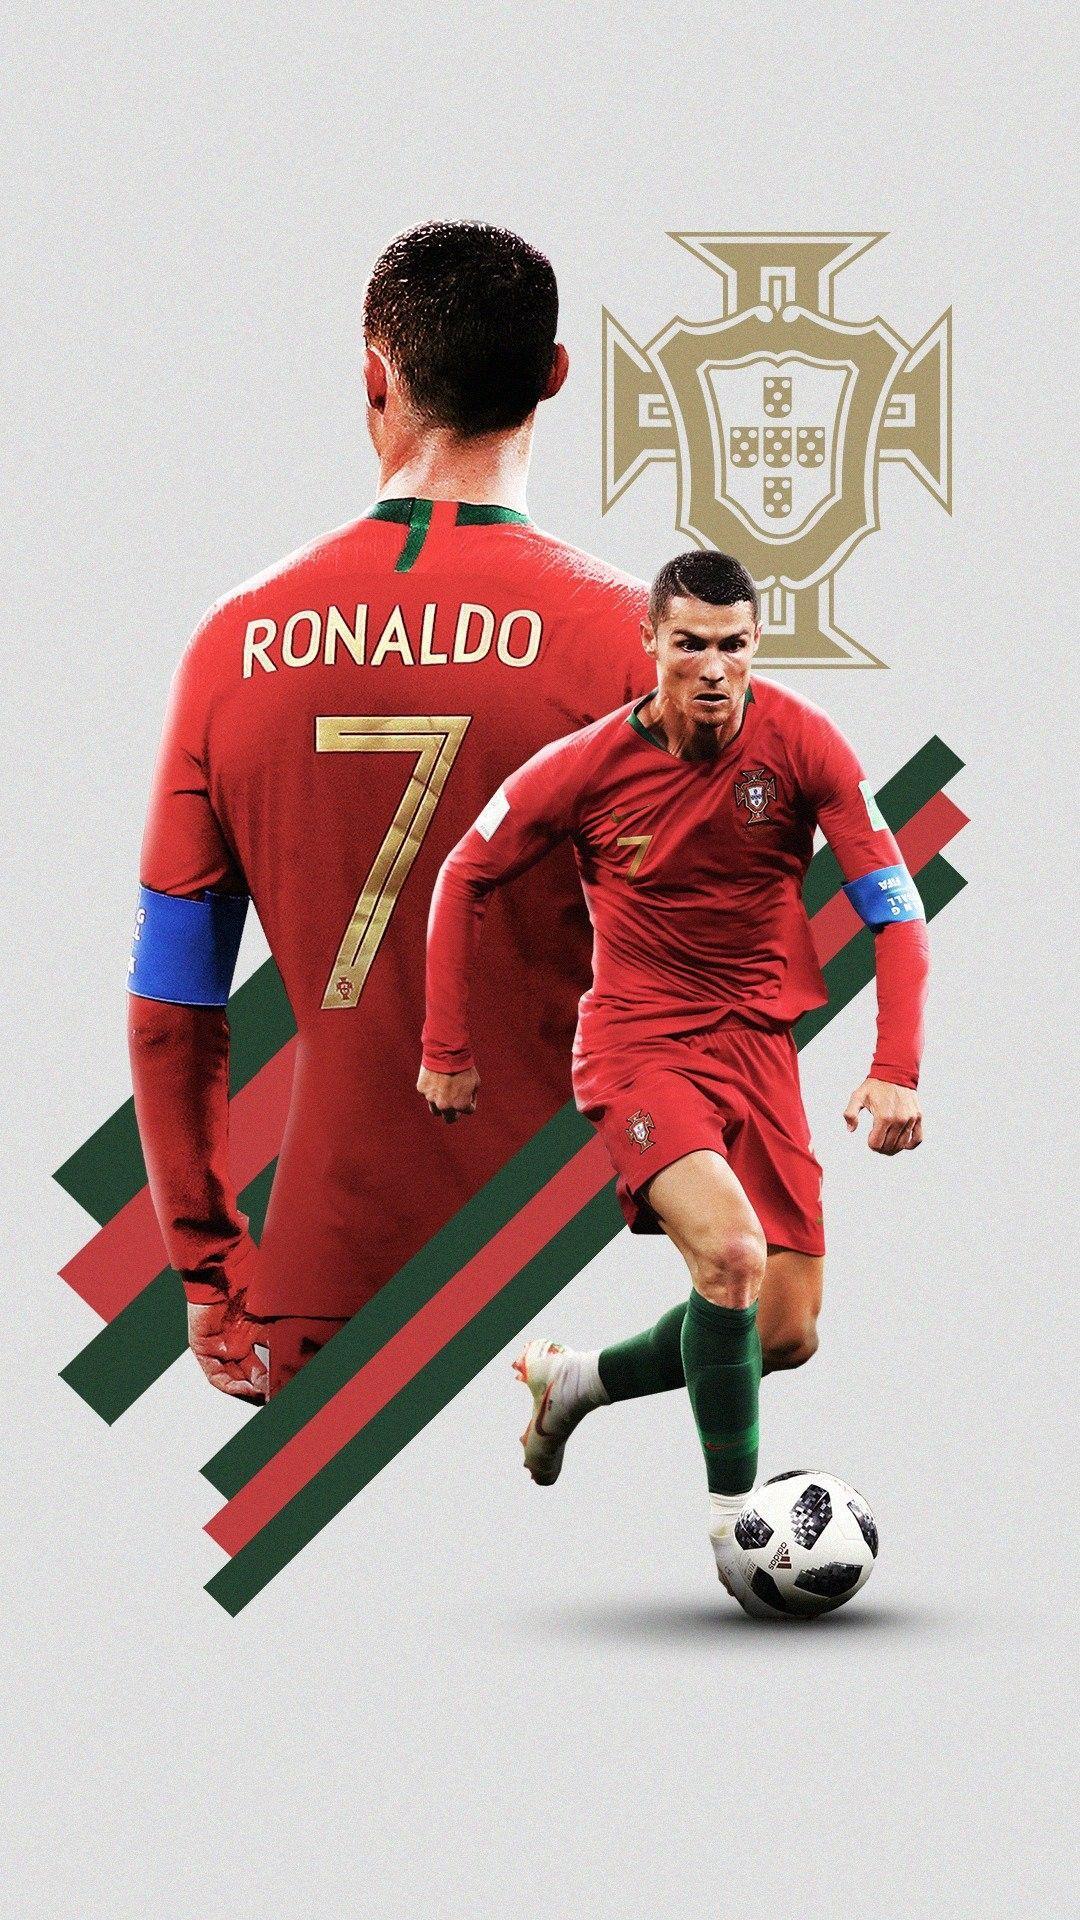 Cristiano Ronaldo Wallpaper for Android